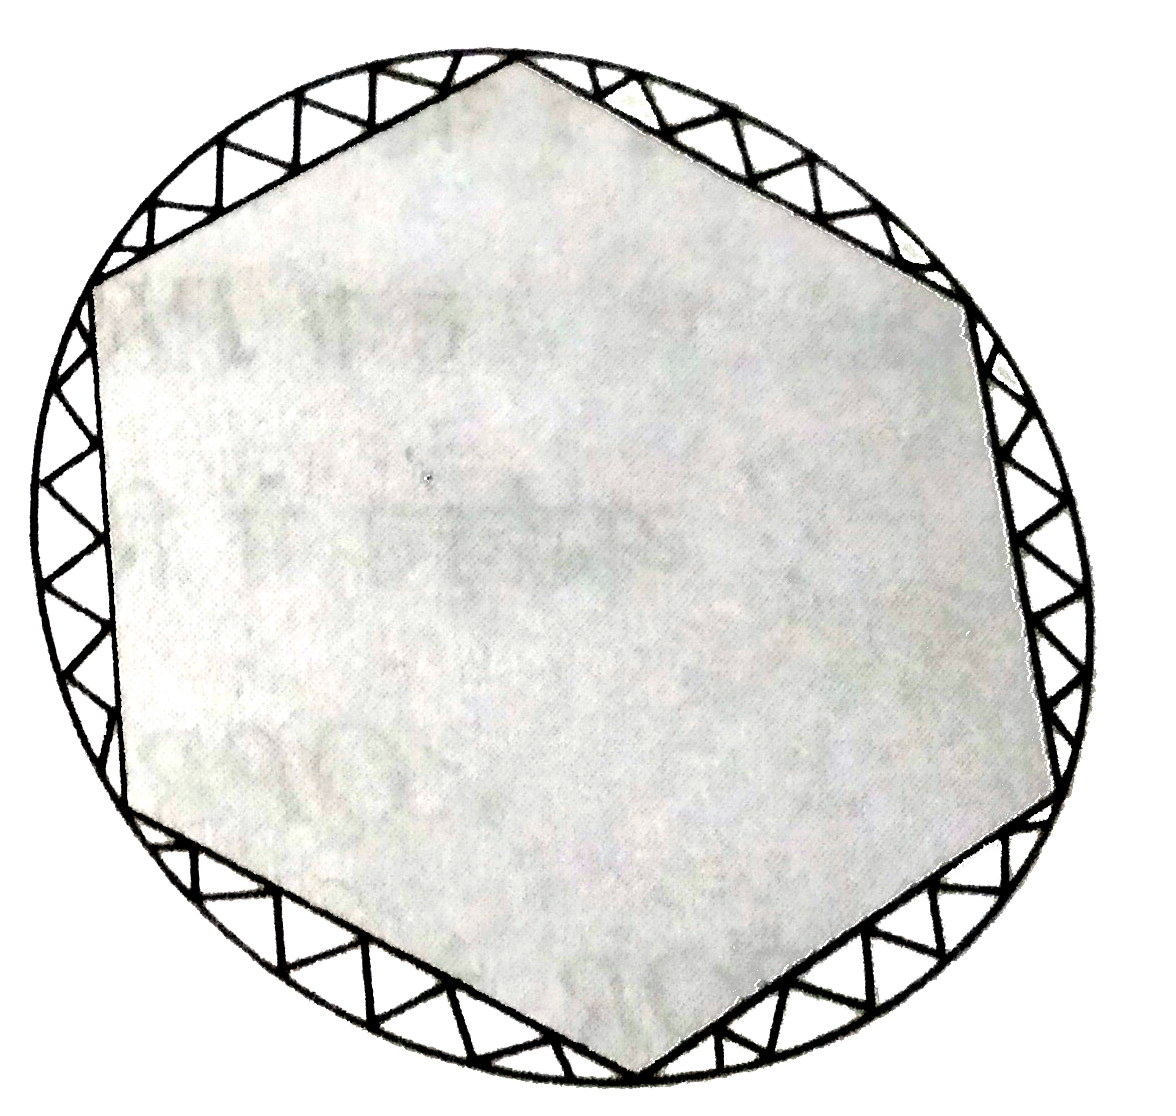 एक गोला मेजपोश पर 6  समान डिजाइन  बने हुए है  जैसा कि आकृति  में दर्शाया गया है । यदि  मेजपोश  कि त्रिज्या  28  सेमी है , तो Rs.0.35 प्रति  वर्ग  सेमी की दर से इन डिजाइनों  को बनाने की लागत  ज्ञात कीजिए ।